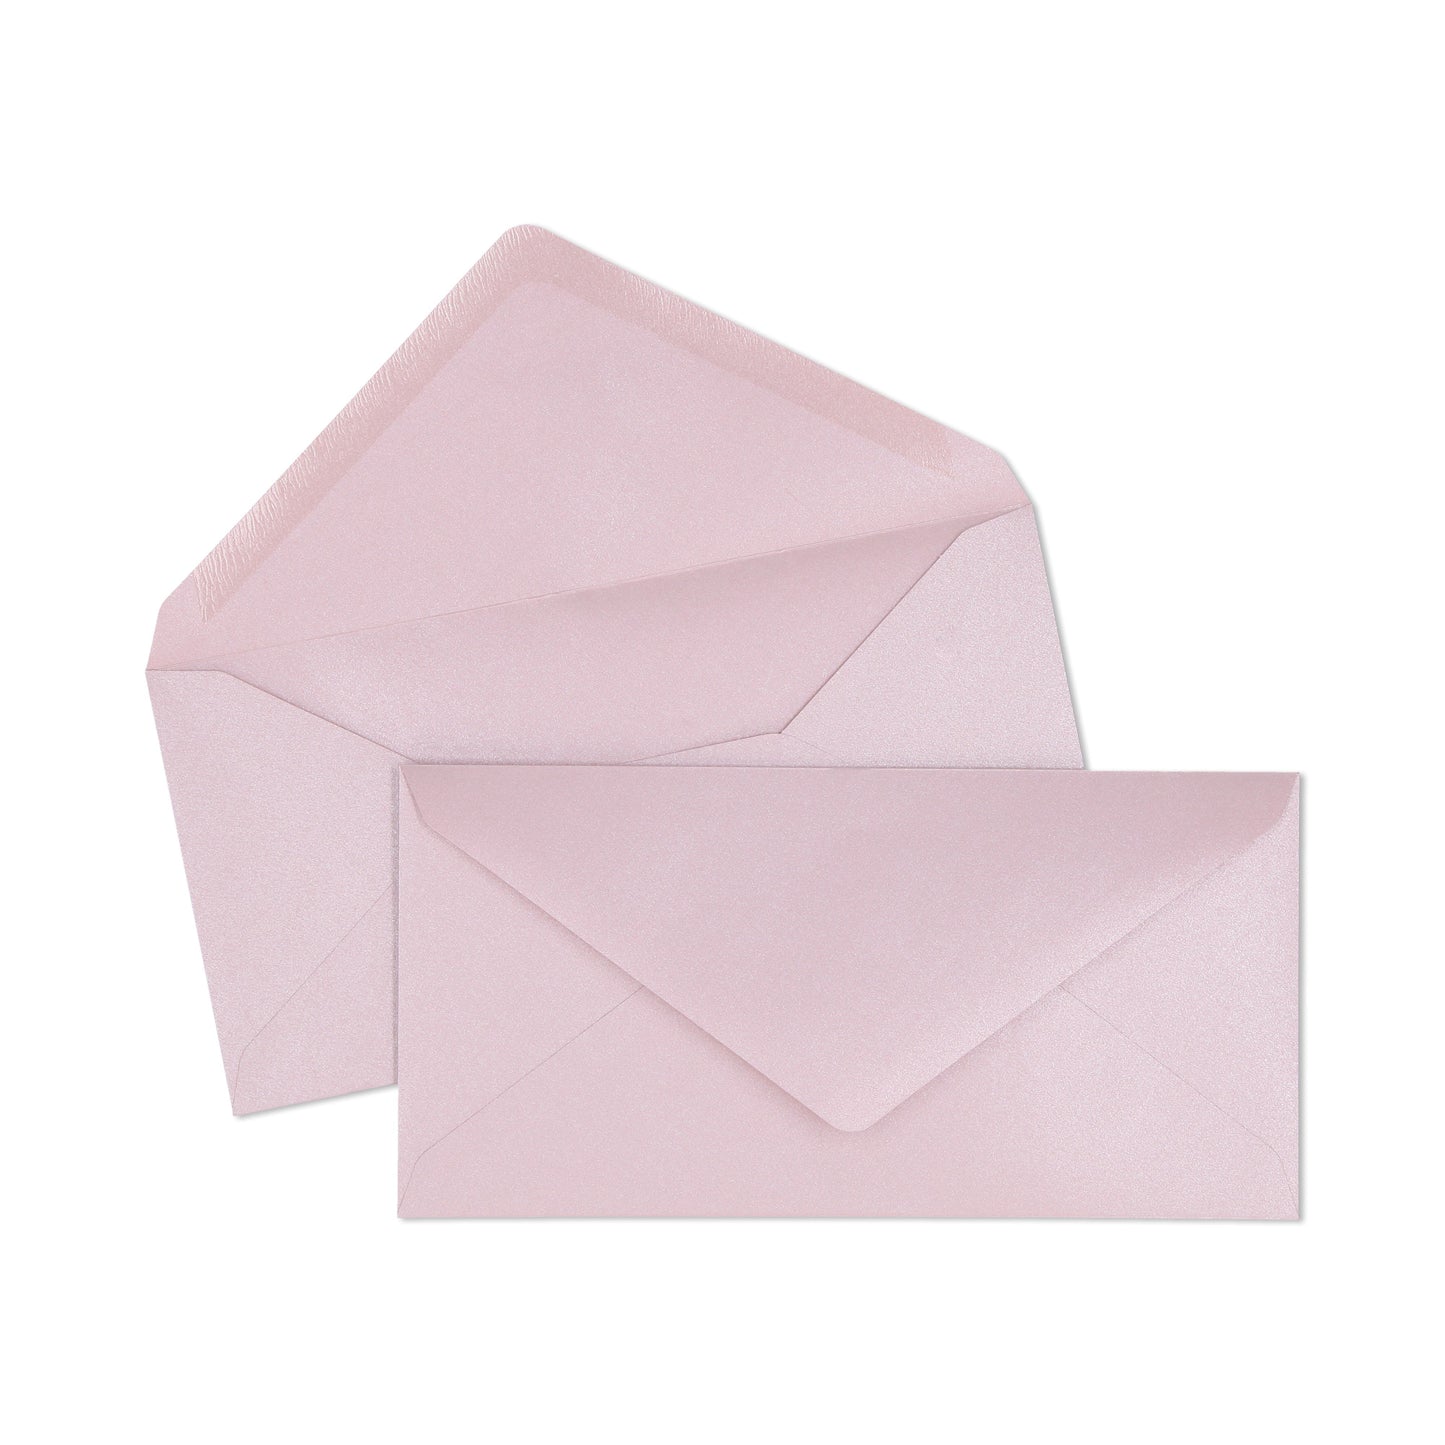 Metallic Pink DL Envelope - 10 units